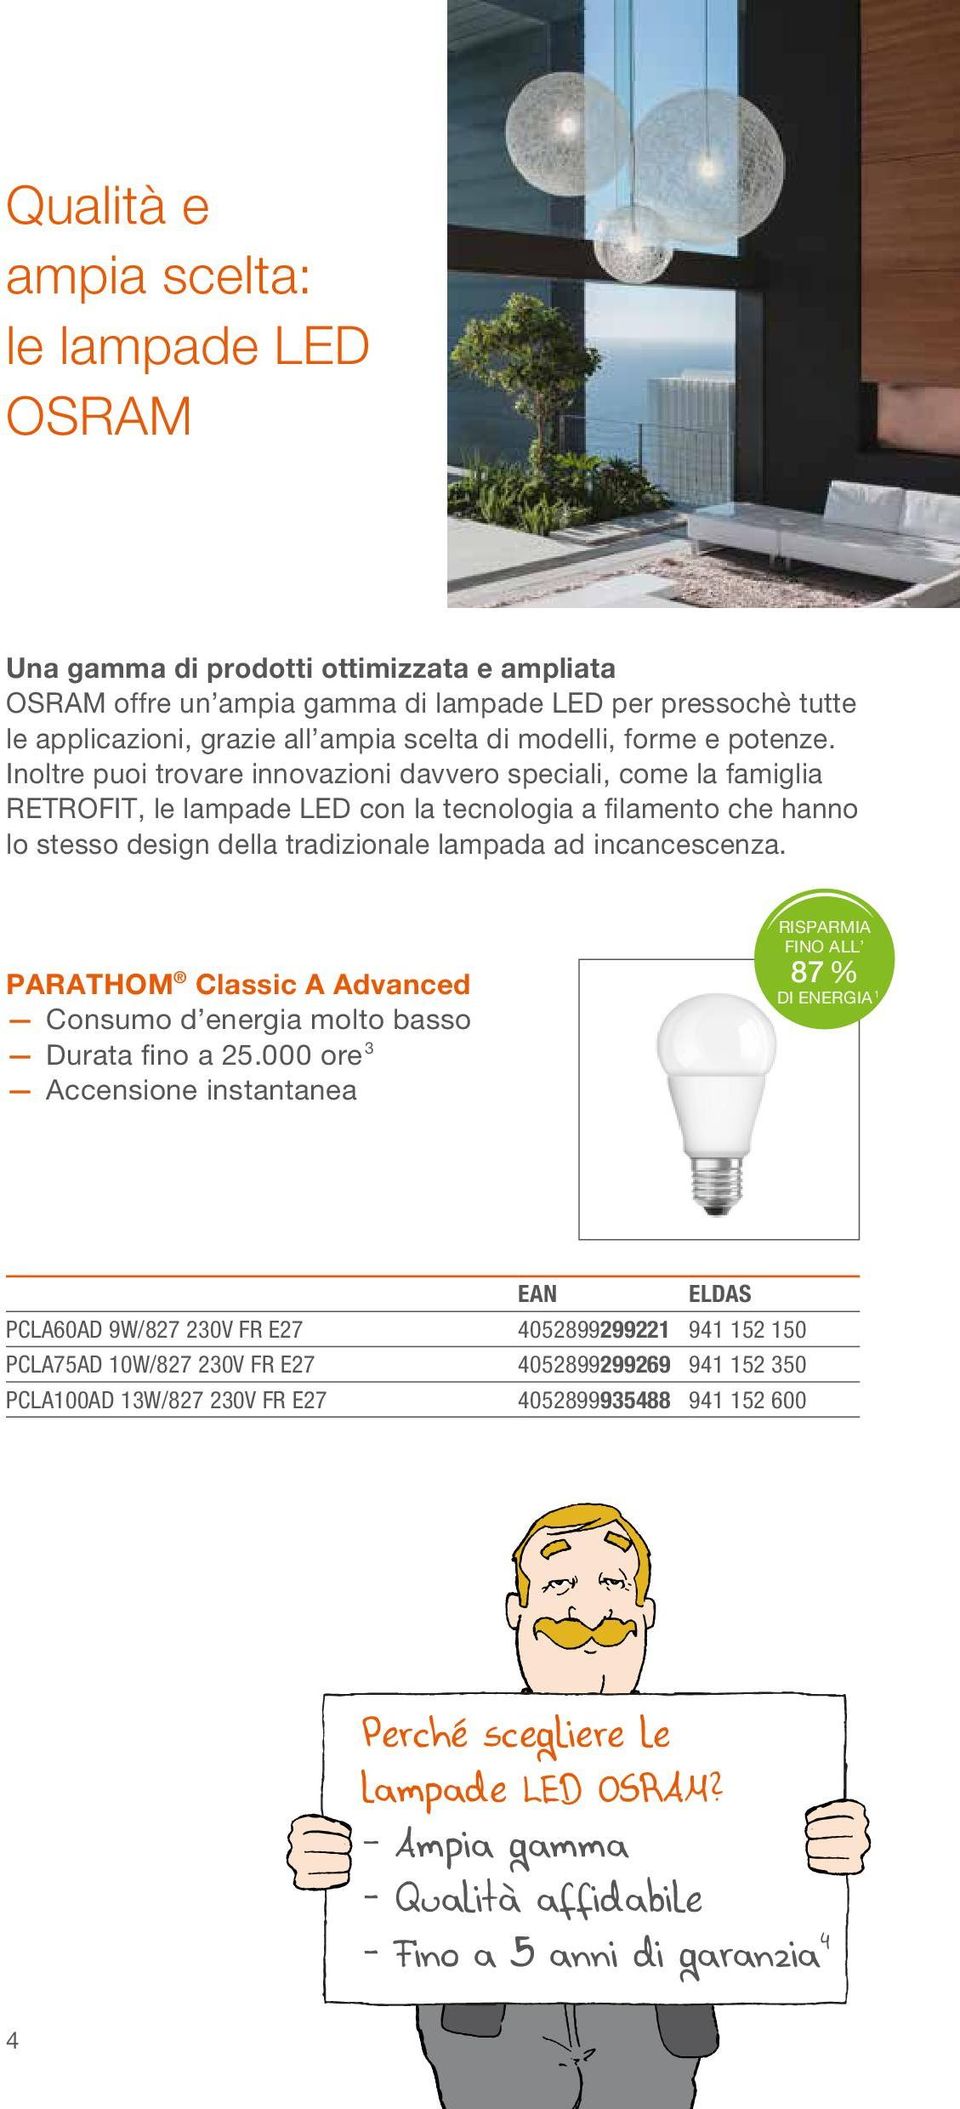 Inoltre puoi trovare innovazioni davvero speciali, come la famiglia RETROFIT, le lampade LED con la tecnologia a filamento che hanno lo stesso design della tradizionale lampada ad incancescenza.